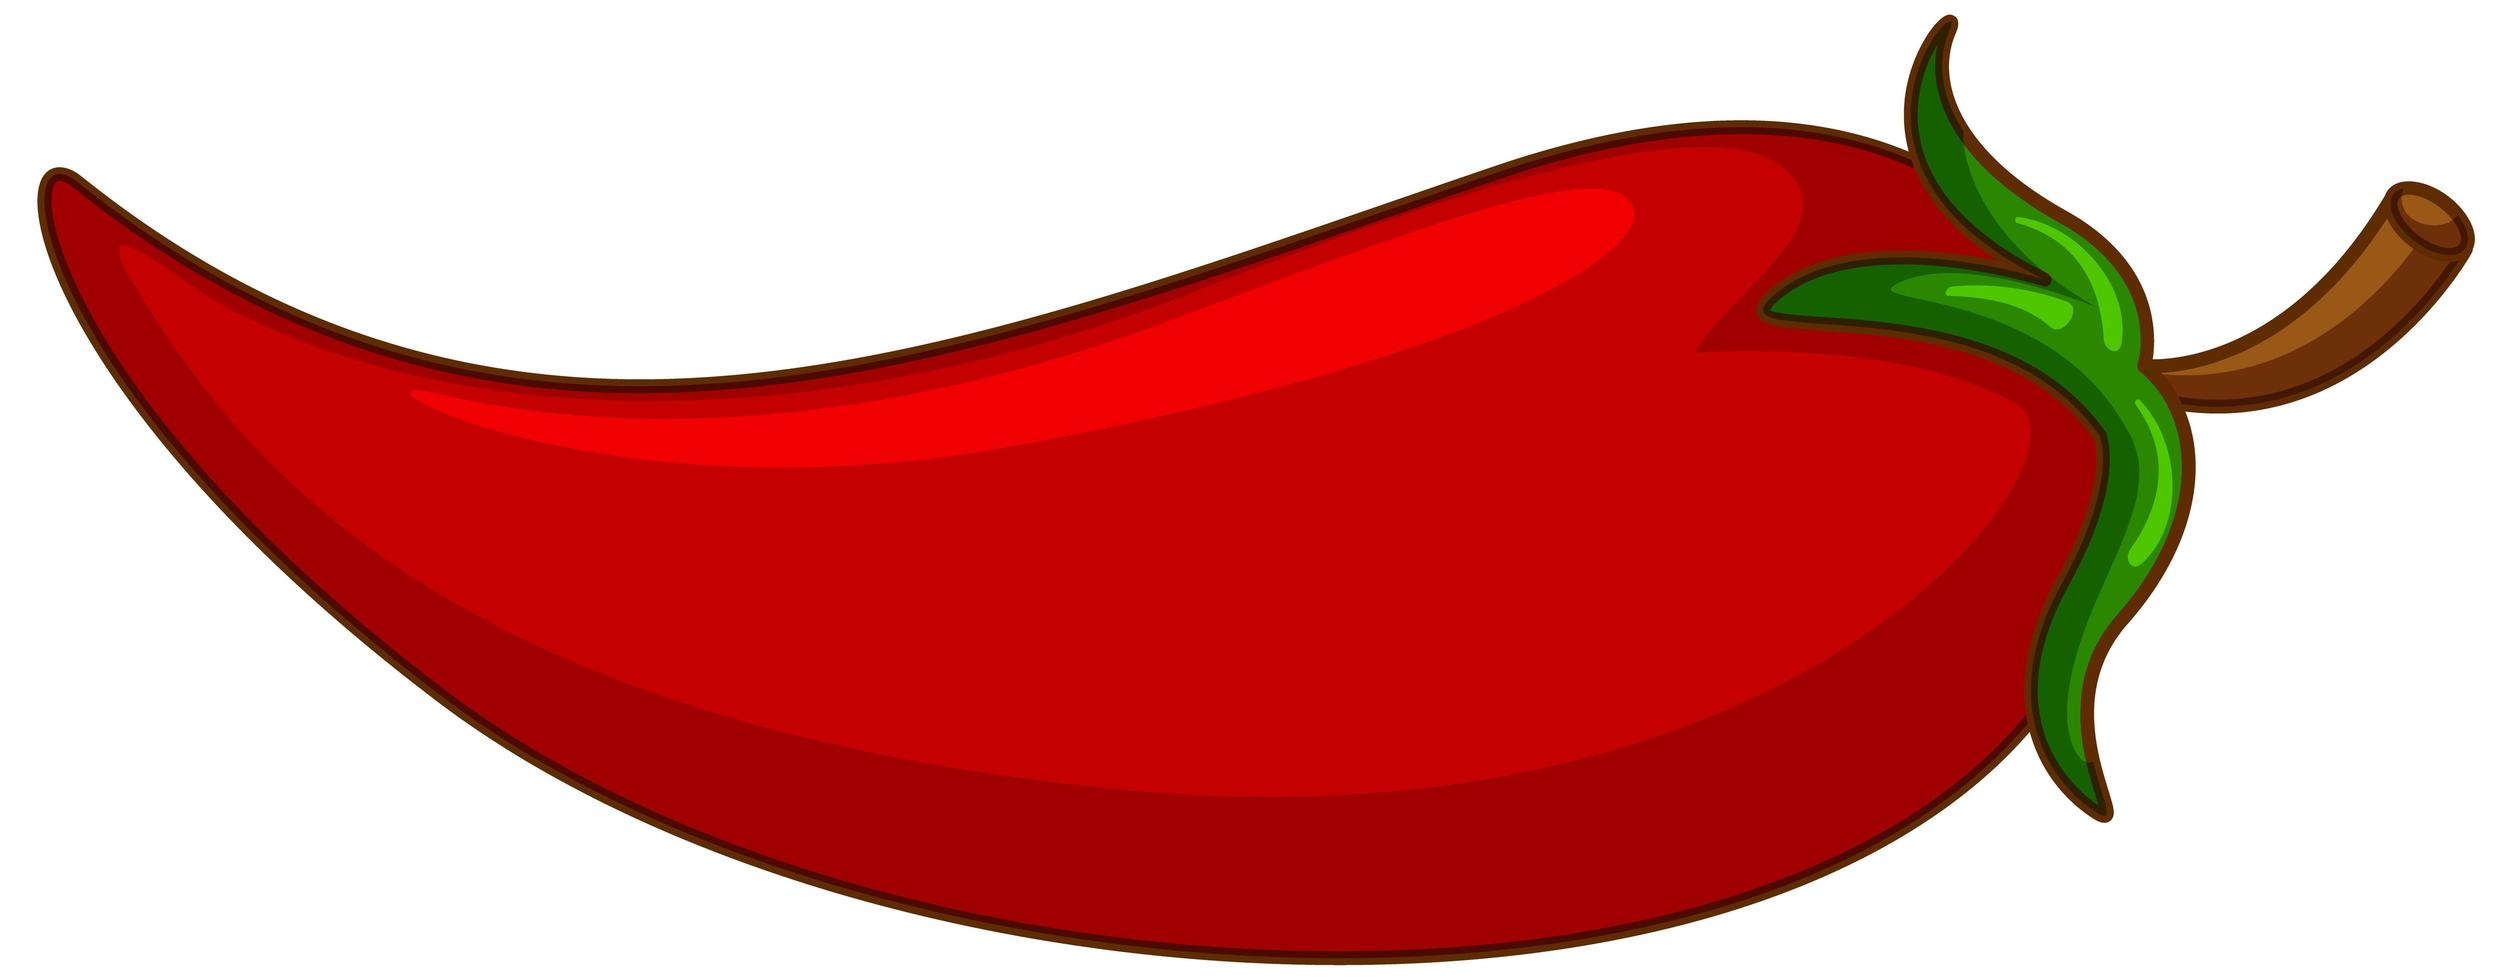 un chile rojo sobre fondo blanco vector